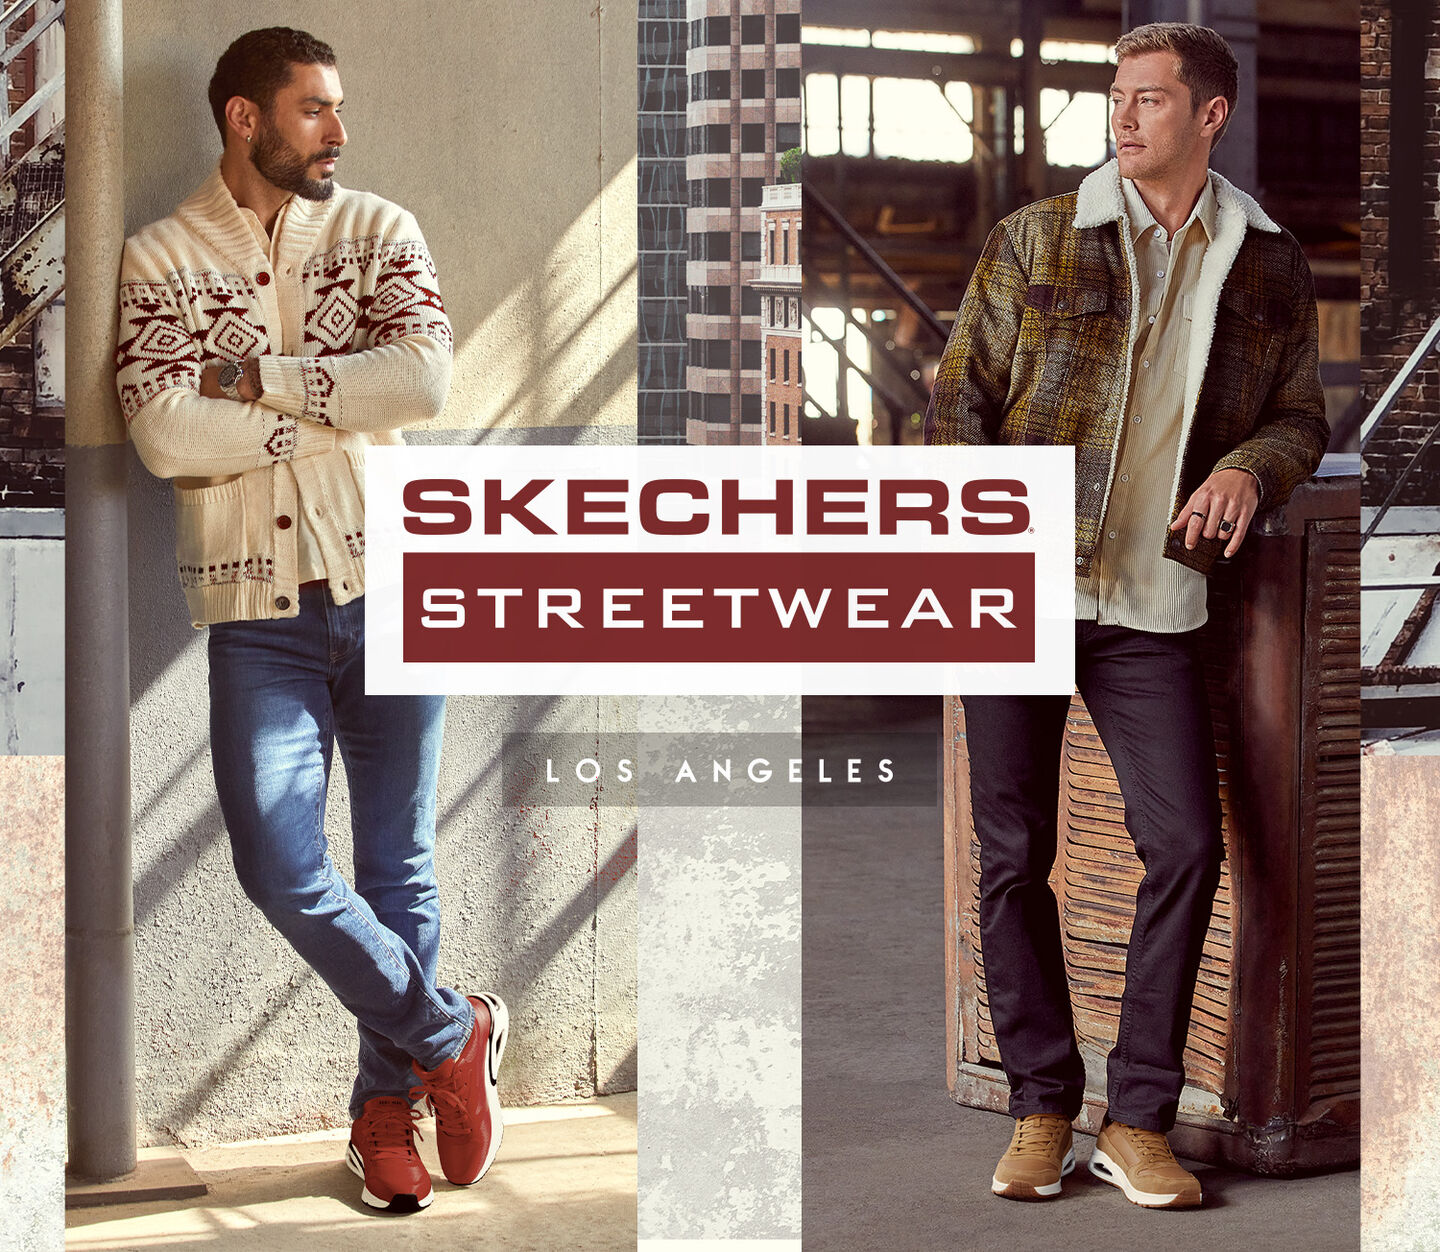 Skechers Street